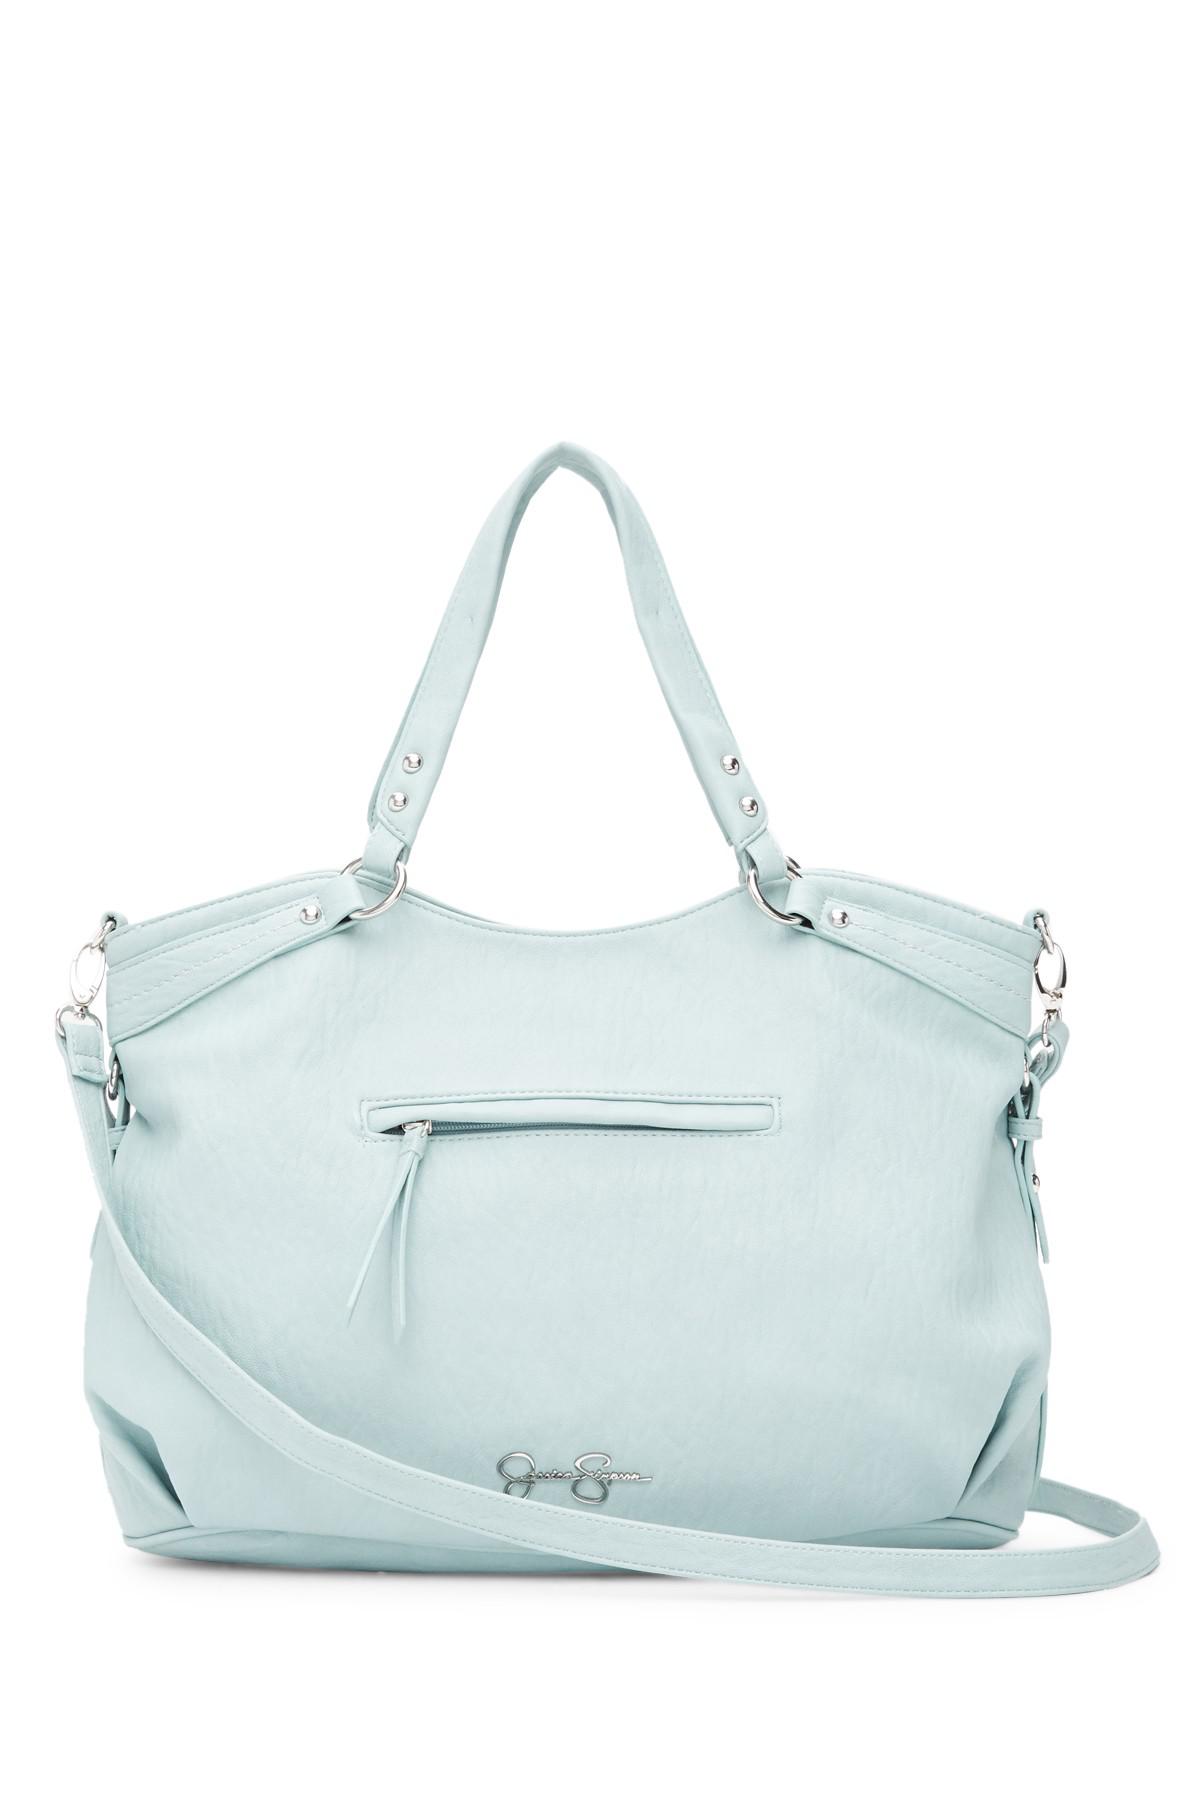 Jessica Simpson Selena Gardenia Tote Bag Purse Handbag JS53622